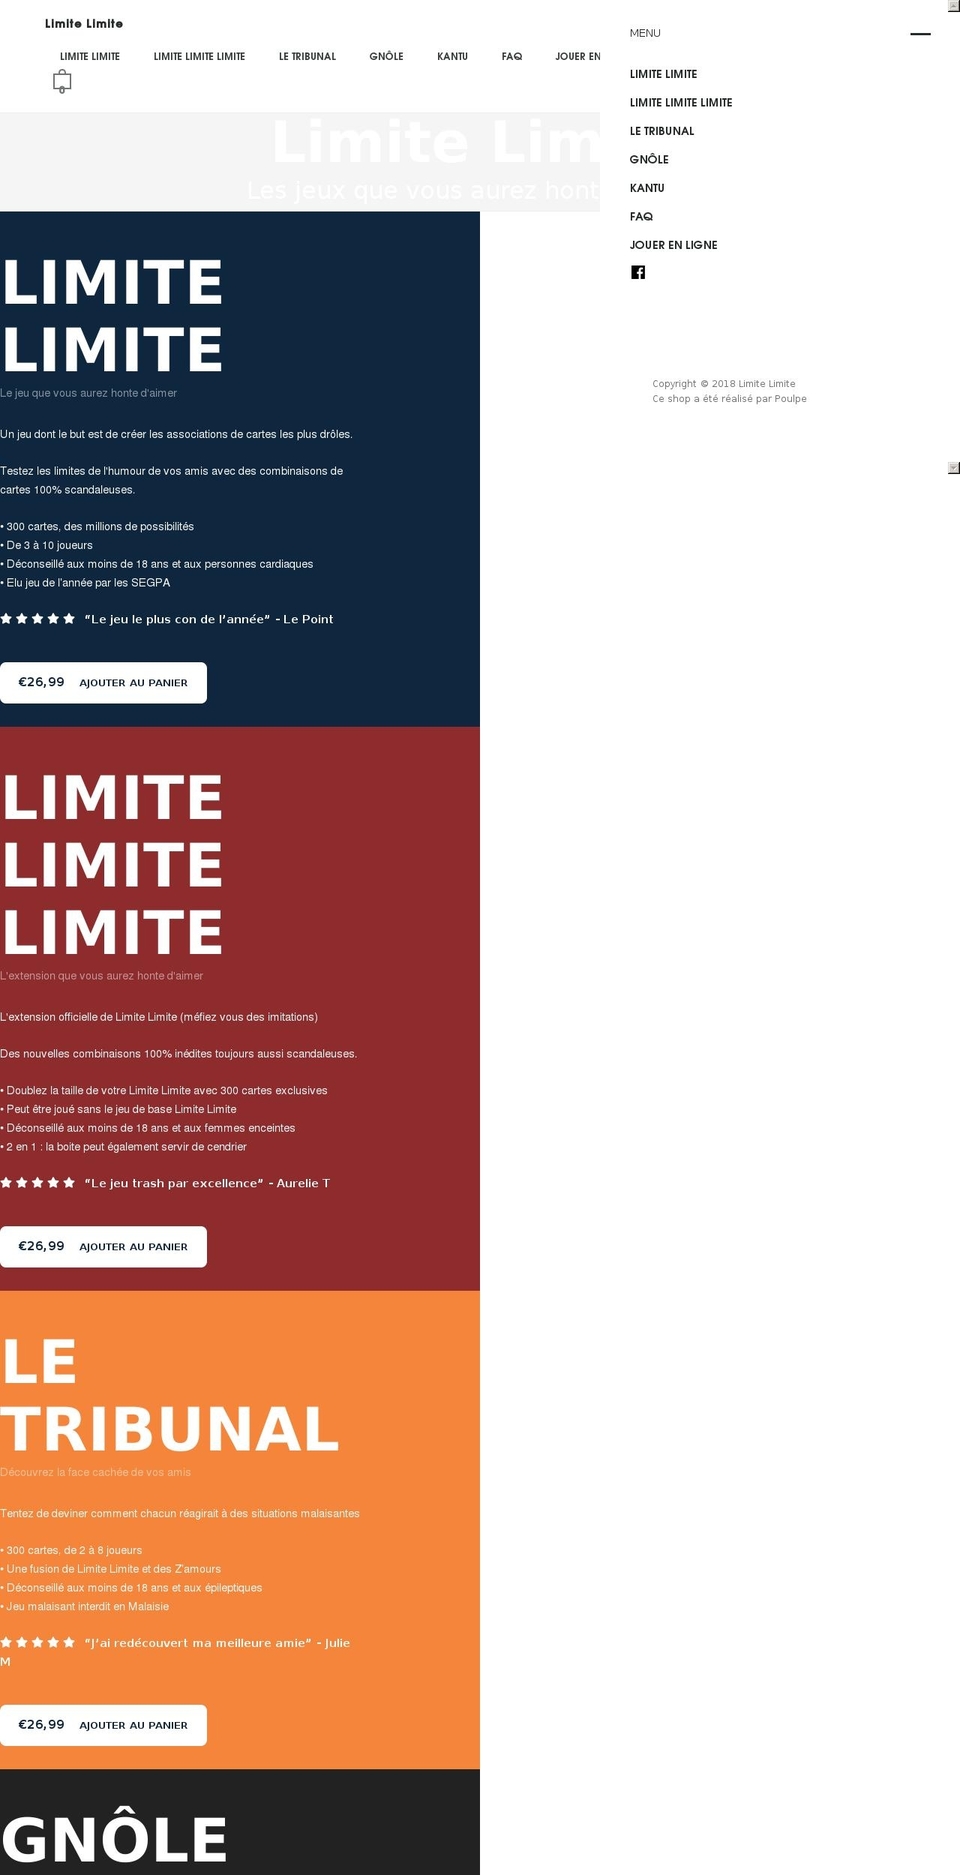 Split Shopify theme site example limitelimite.com